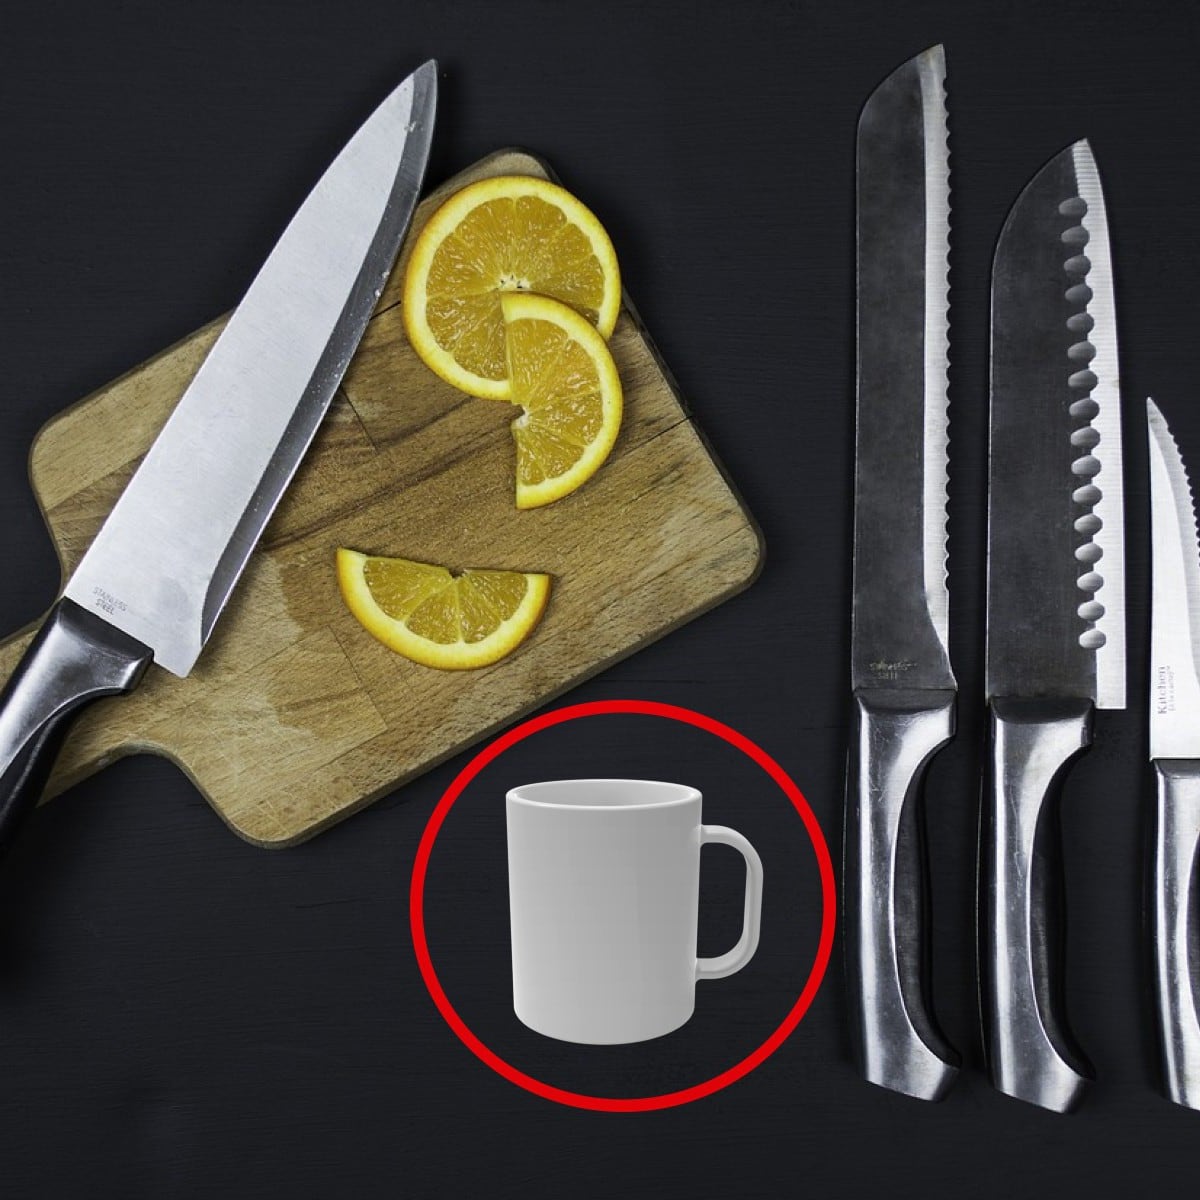 Mejore el proceso de afilado de sus cuchillos usando afiladores o